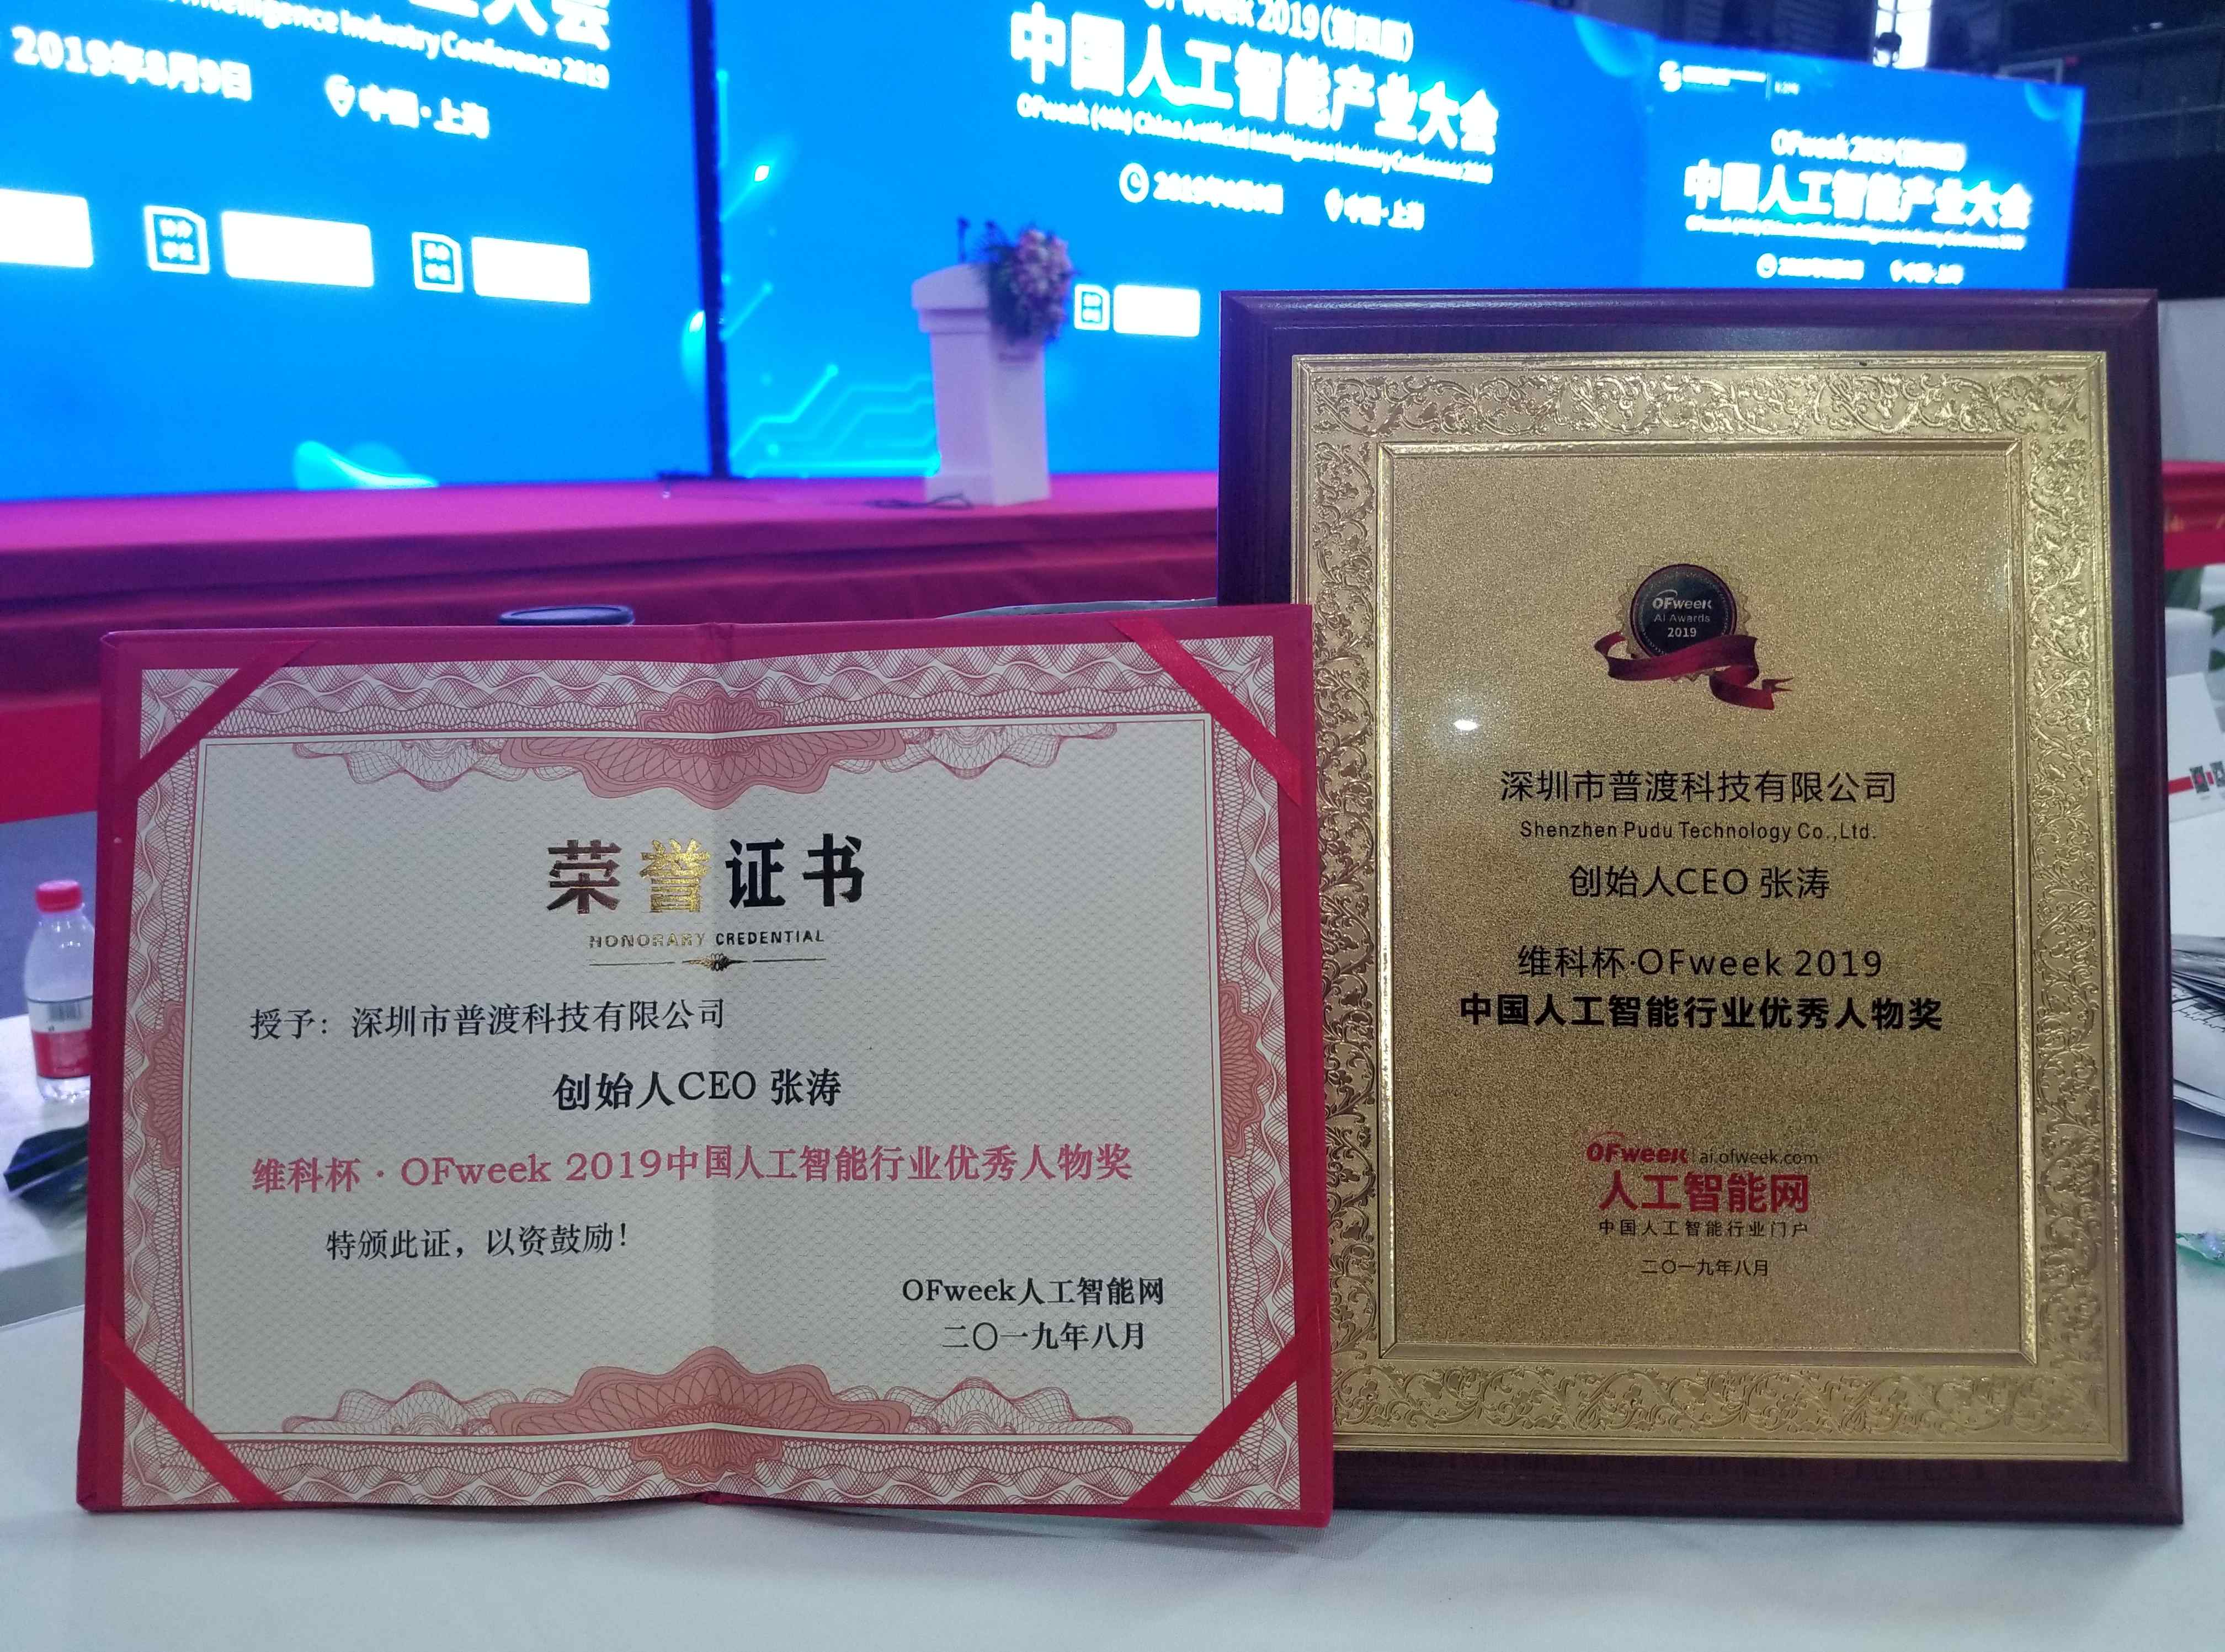 普渡科技 普渡科技创始人张涛获2019中国人工智能行业优秀人物奖